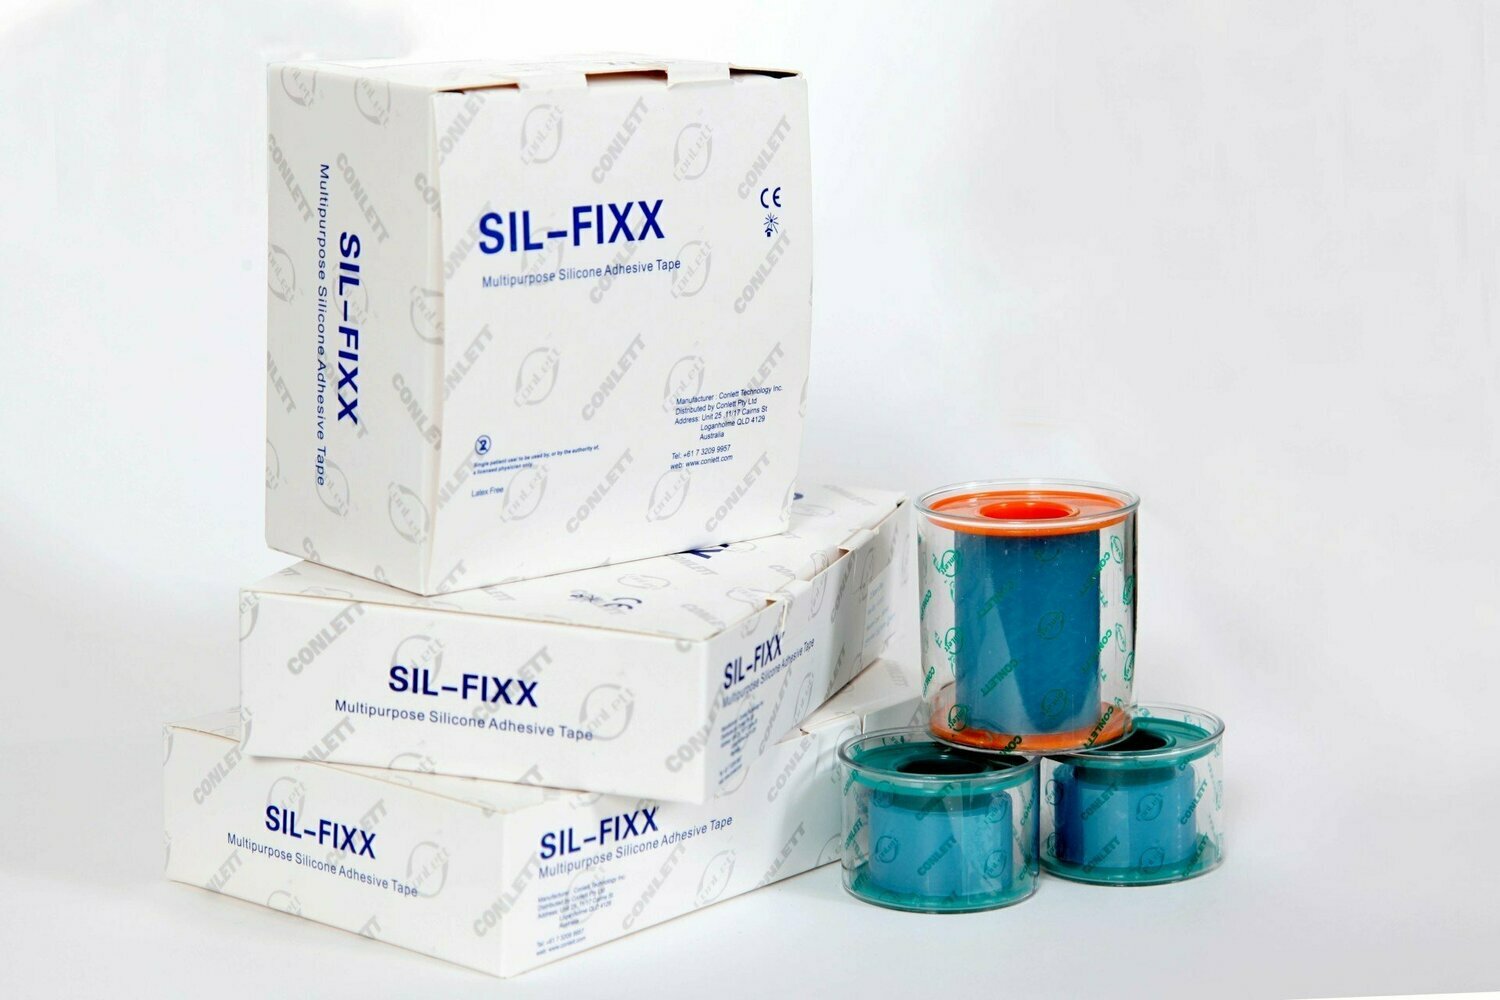 Sil-fixx Tape